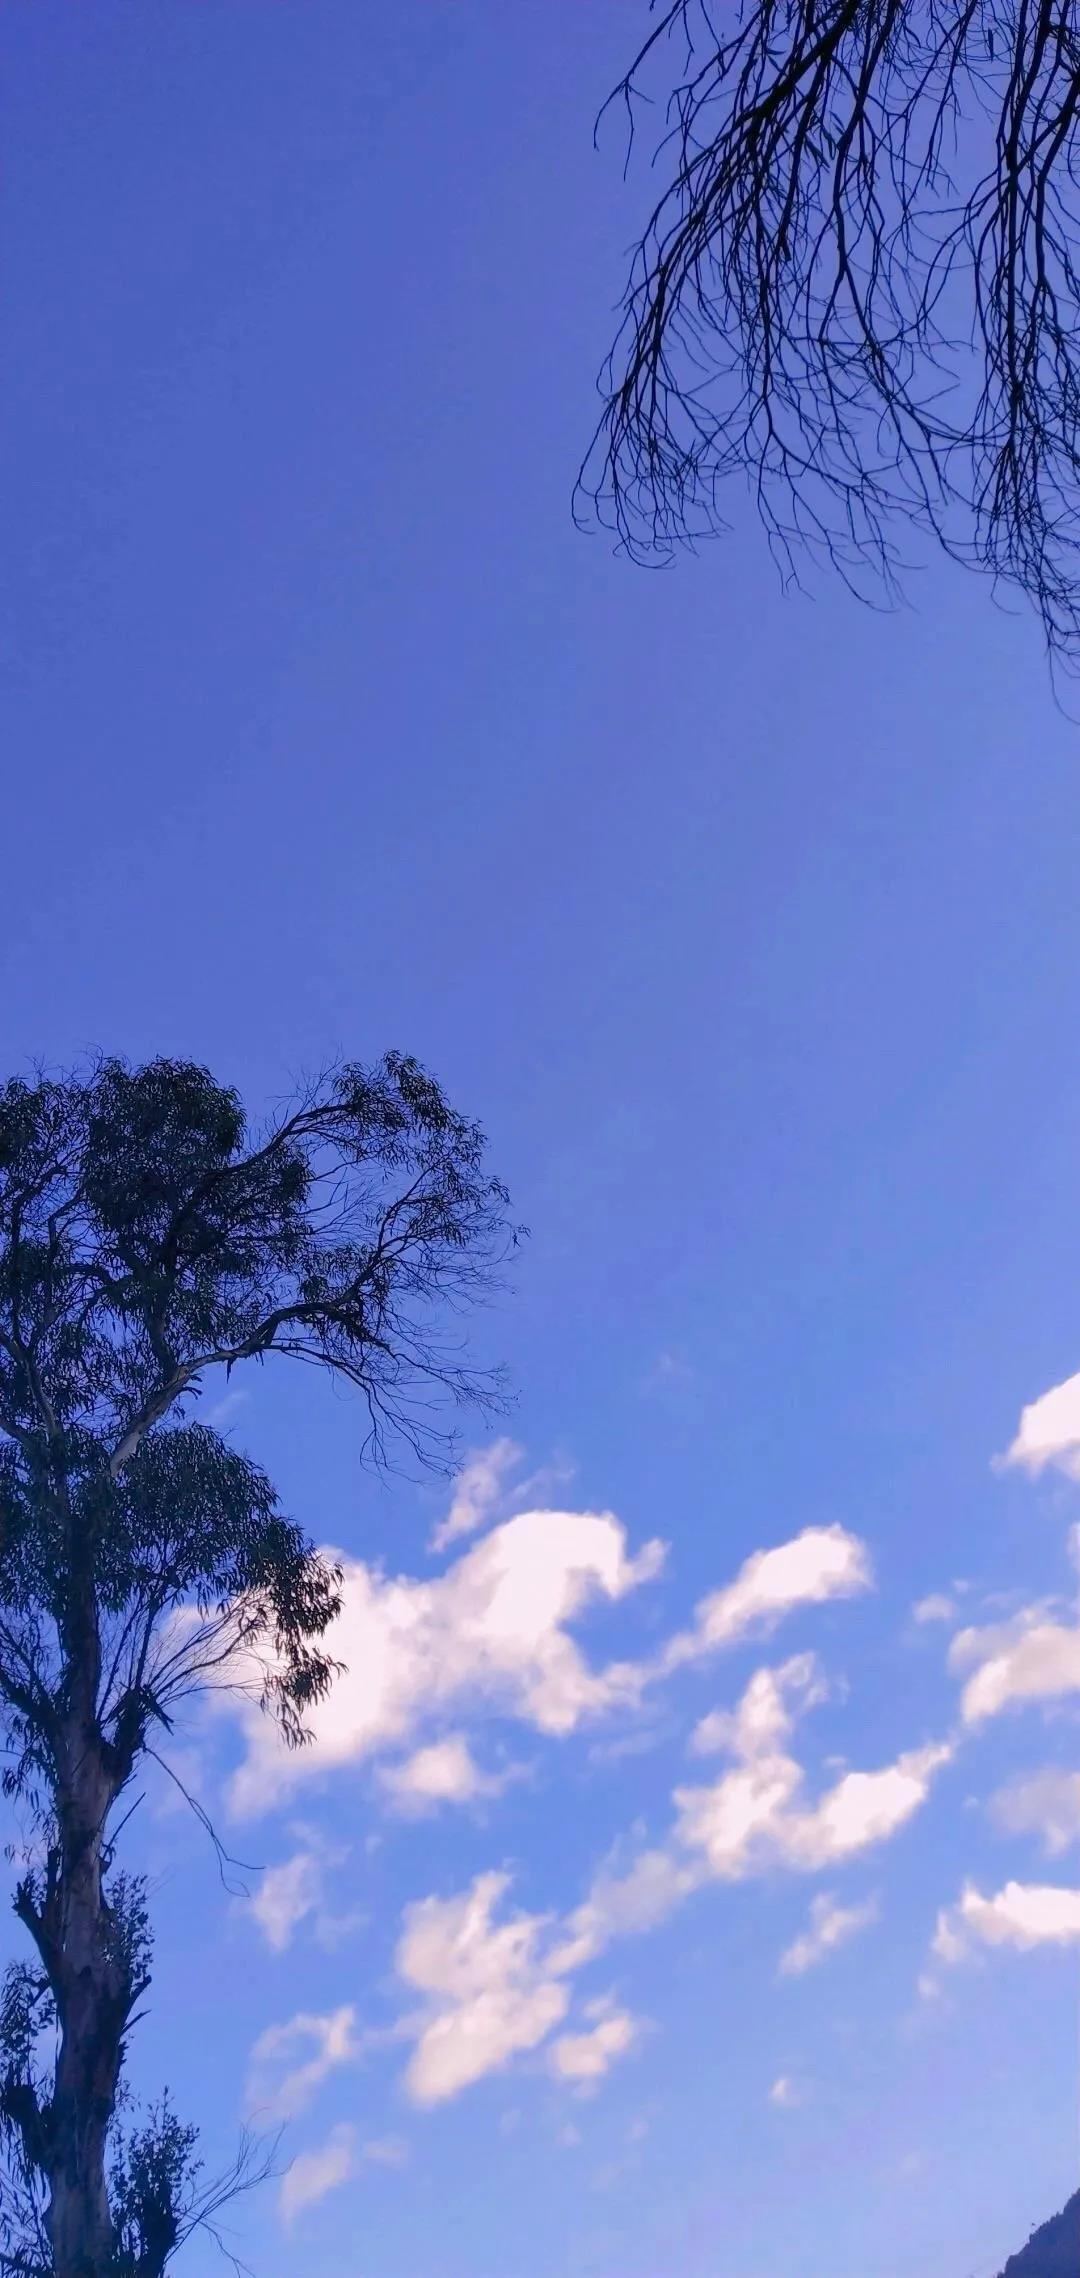 蓝天白云水面波光粼粼唯美风景手机壁纸图片